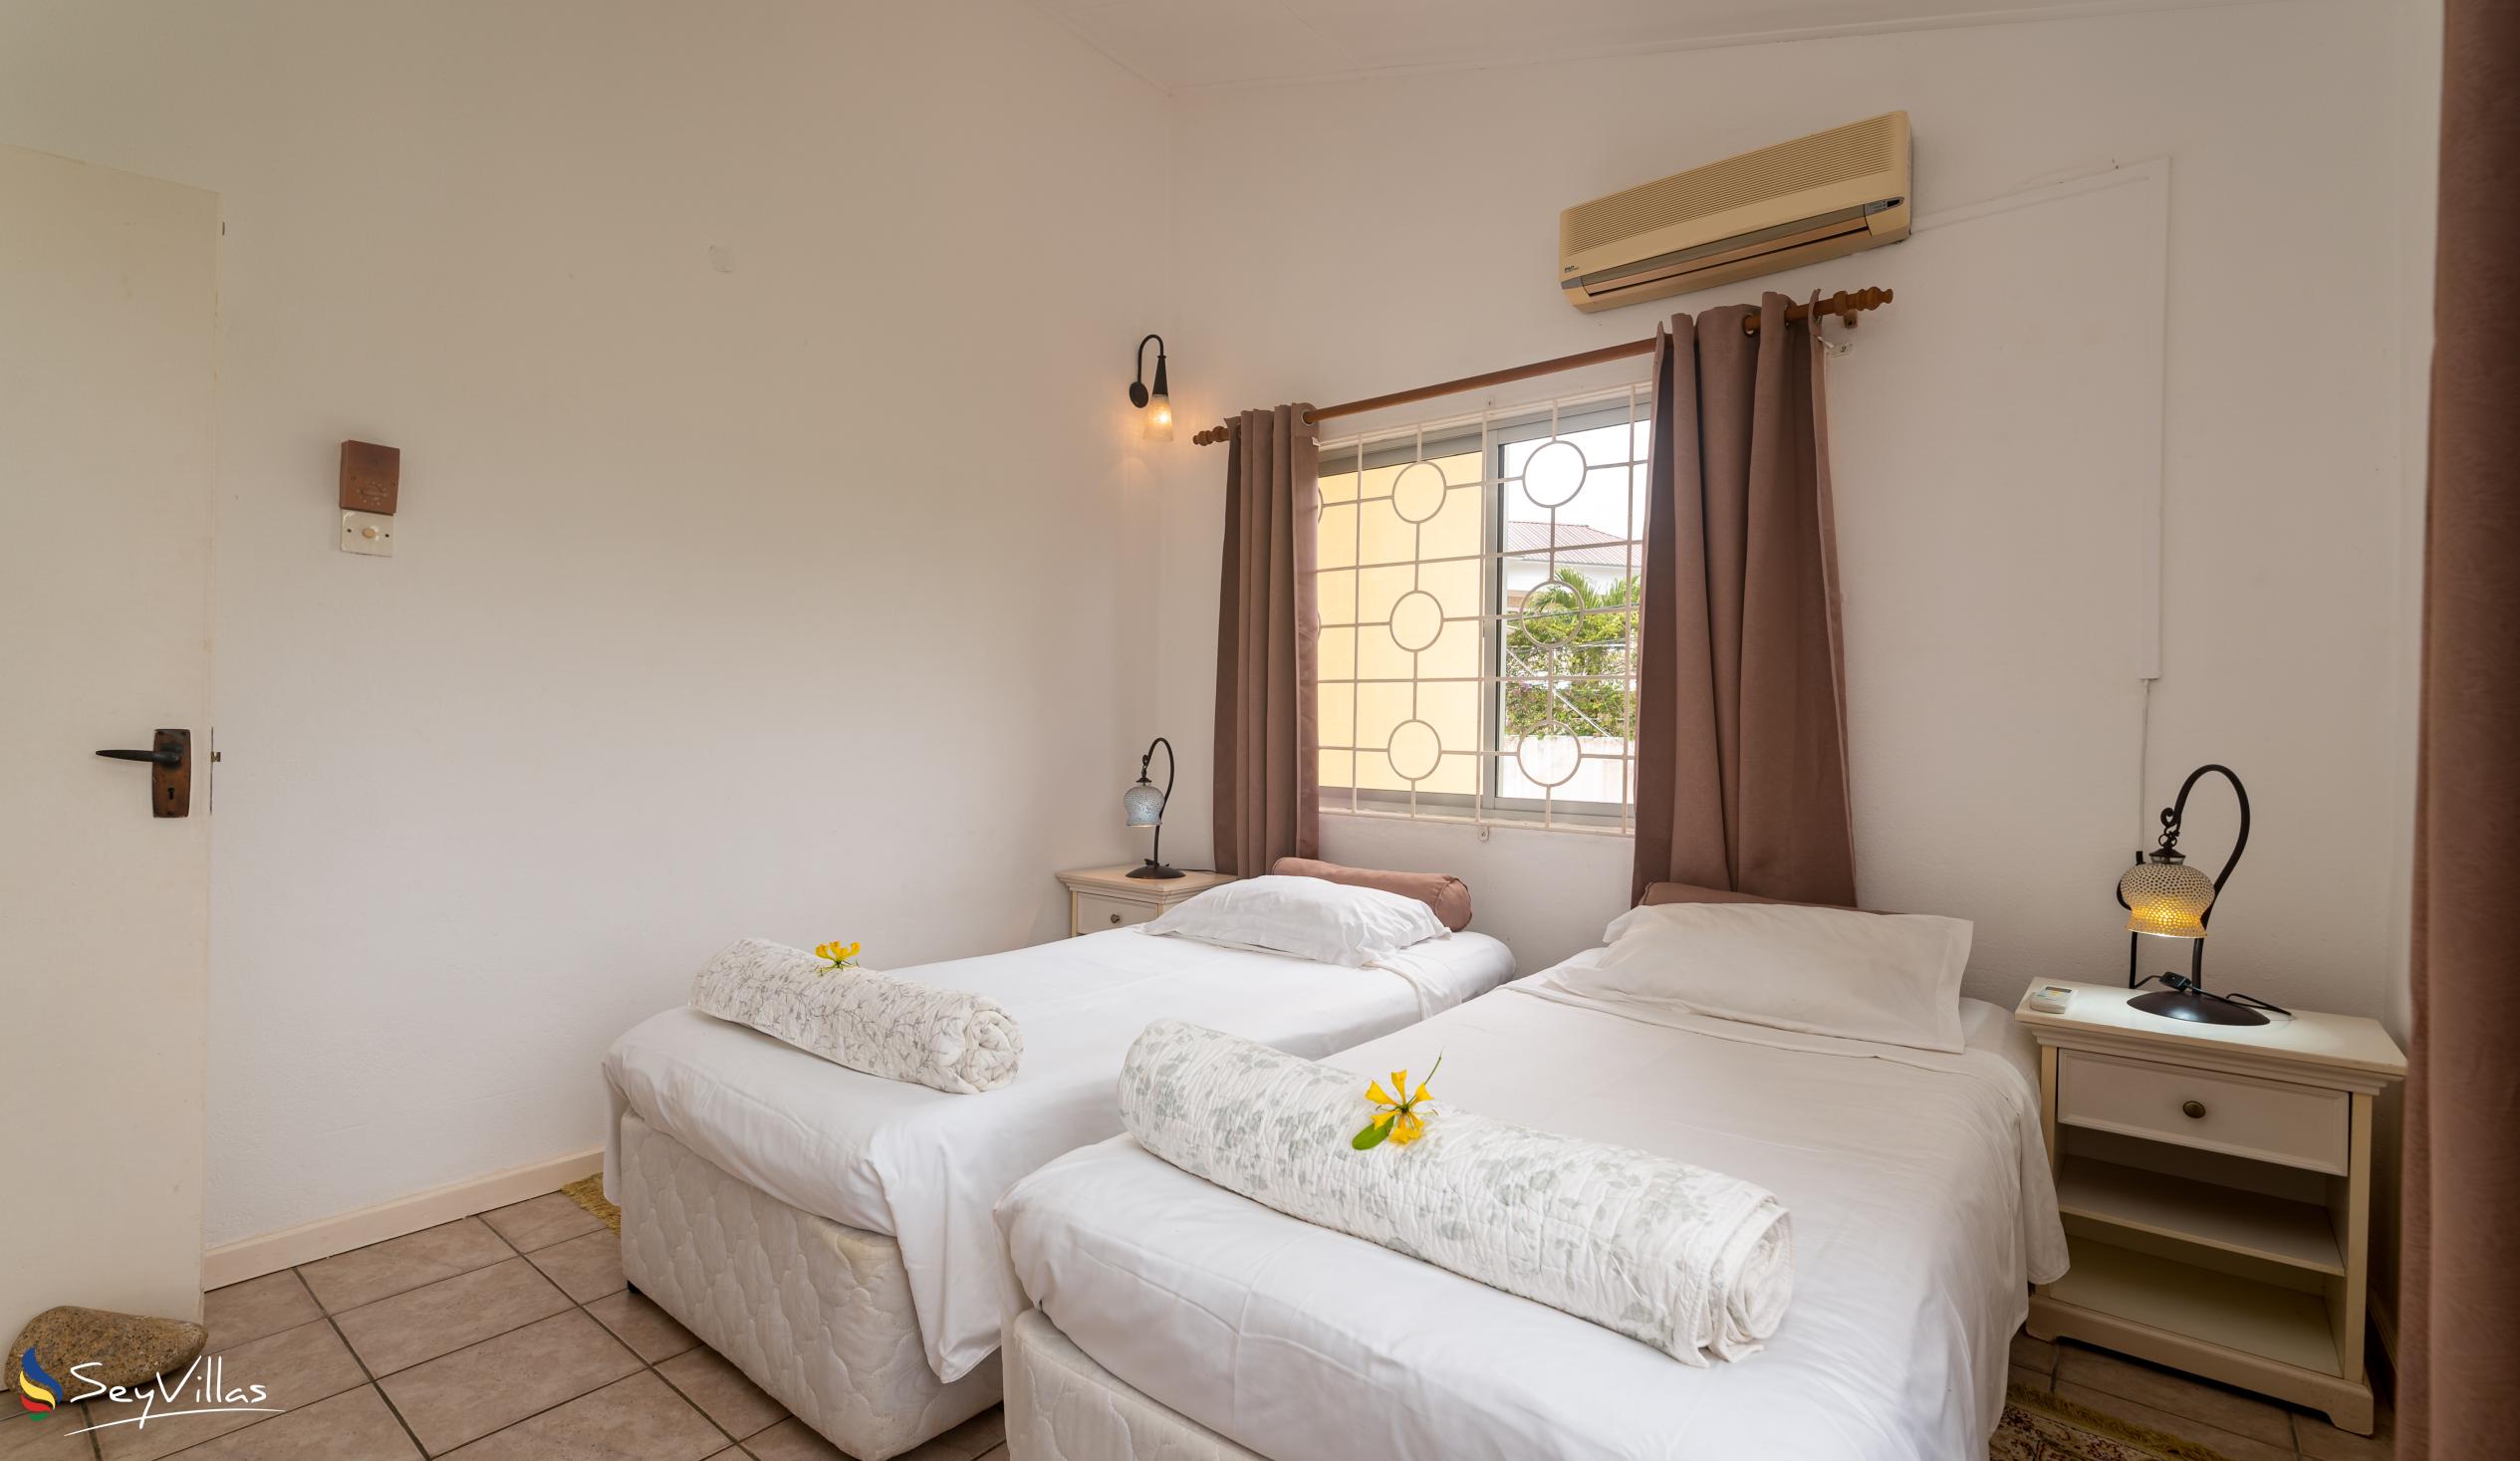 Foto 73: Residence Monte Cristo - Appartamento con 2 camere - Mahé (Seychelles)